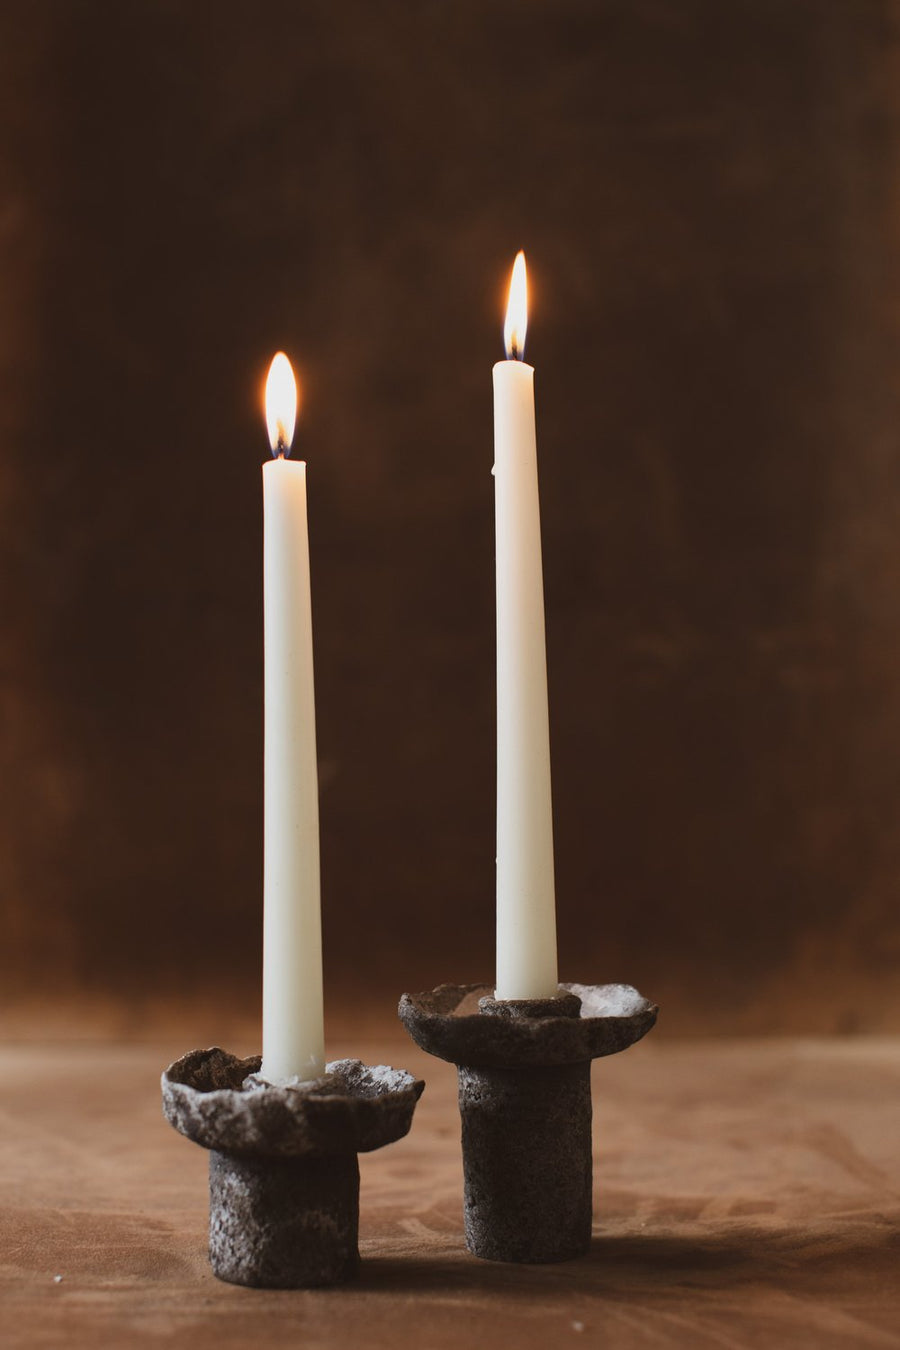 Handmade Ceramic Candlesticks